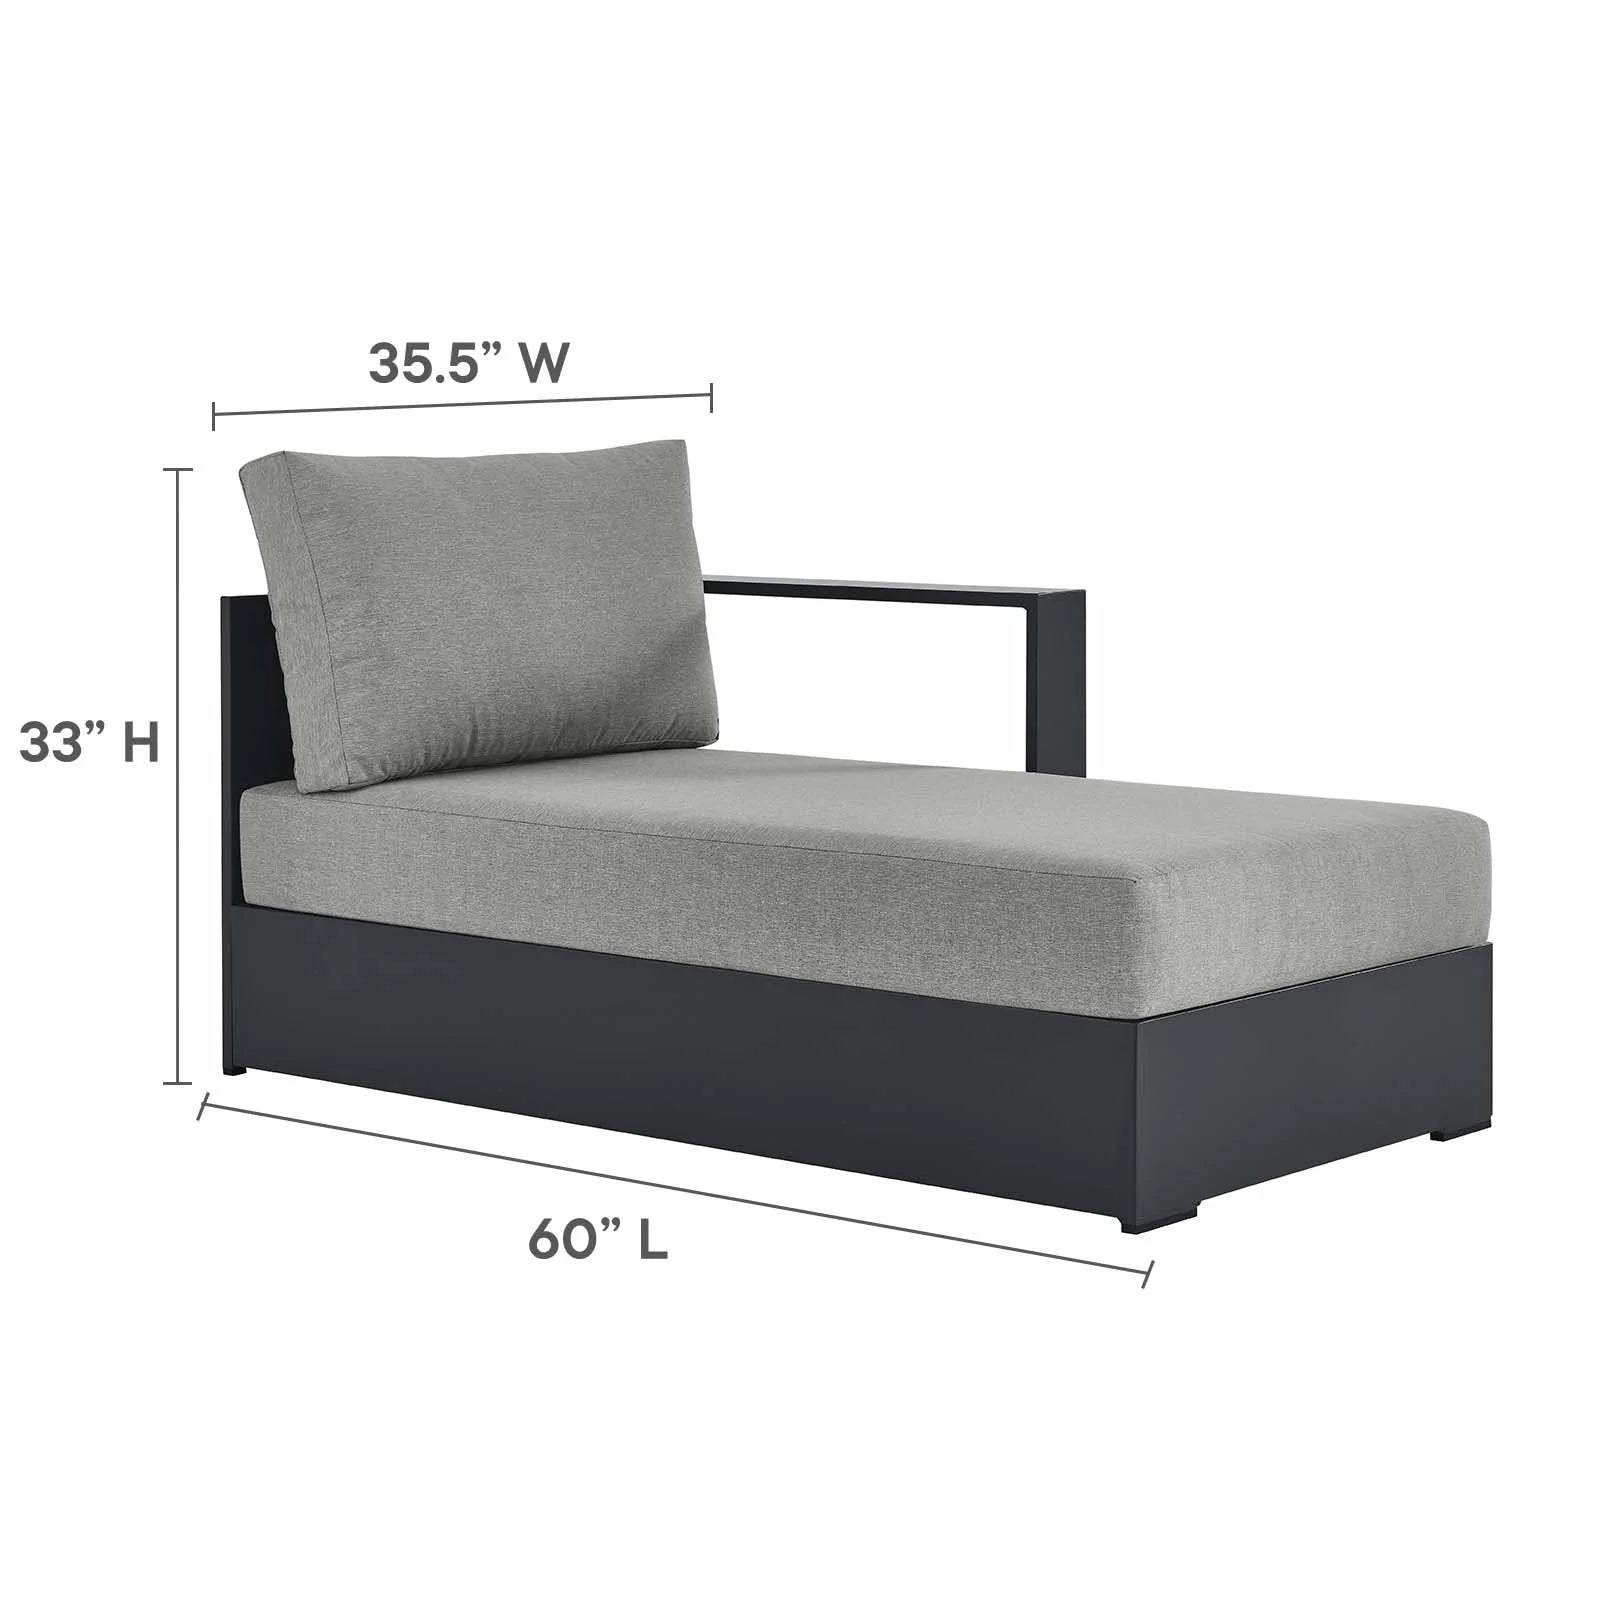 Chaise gris para exteriores de aluminio Neuba - Derecho Modular dimensiones.